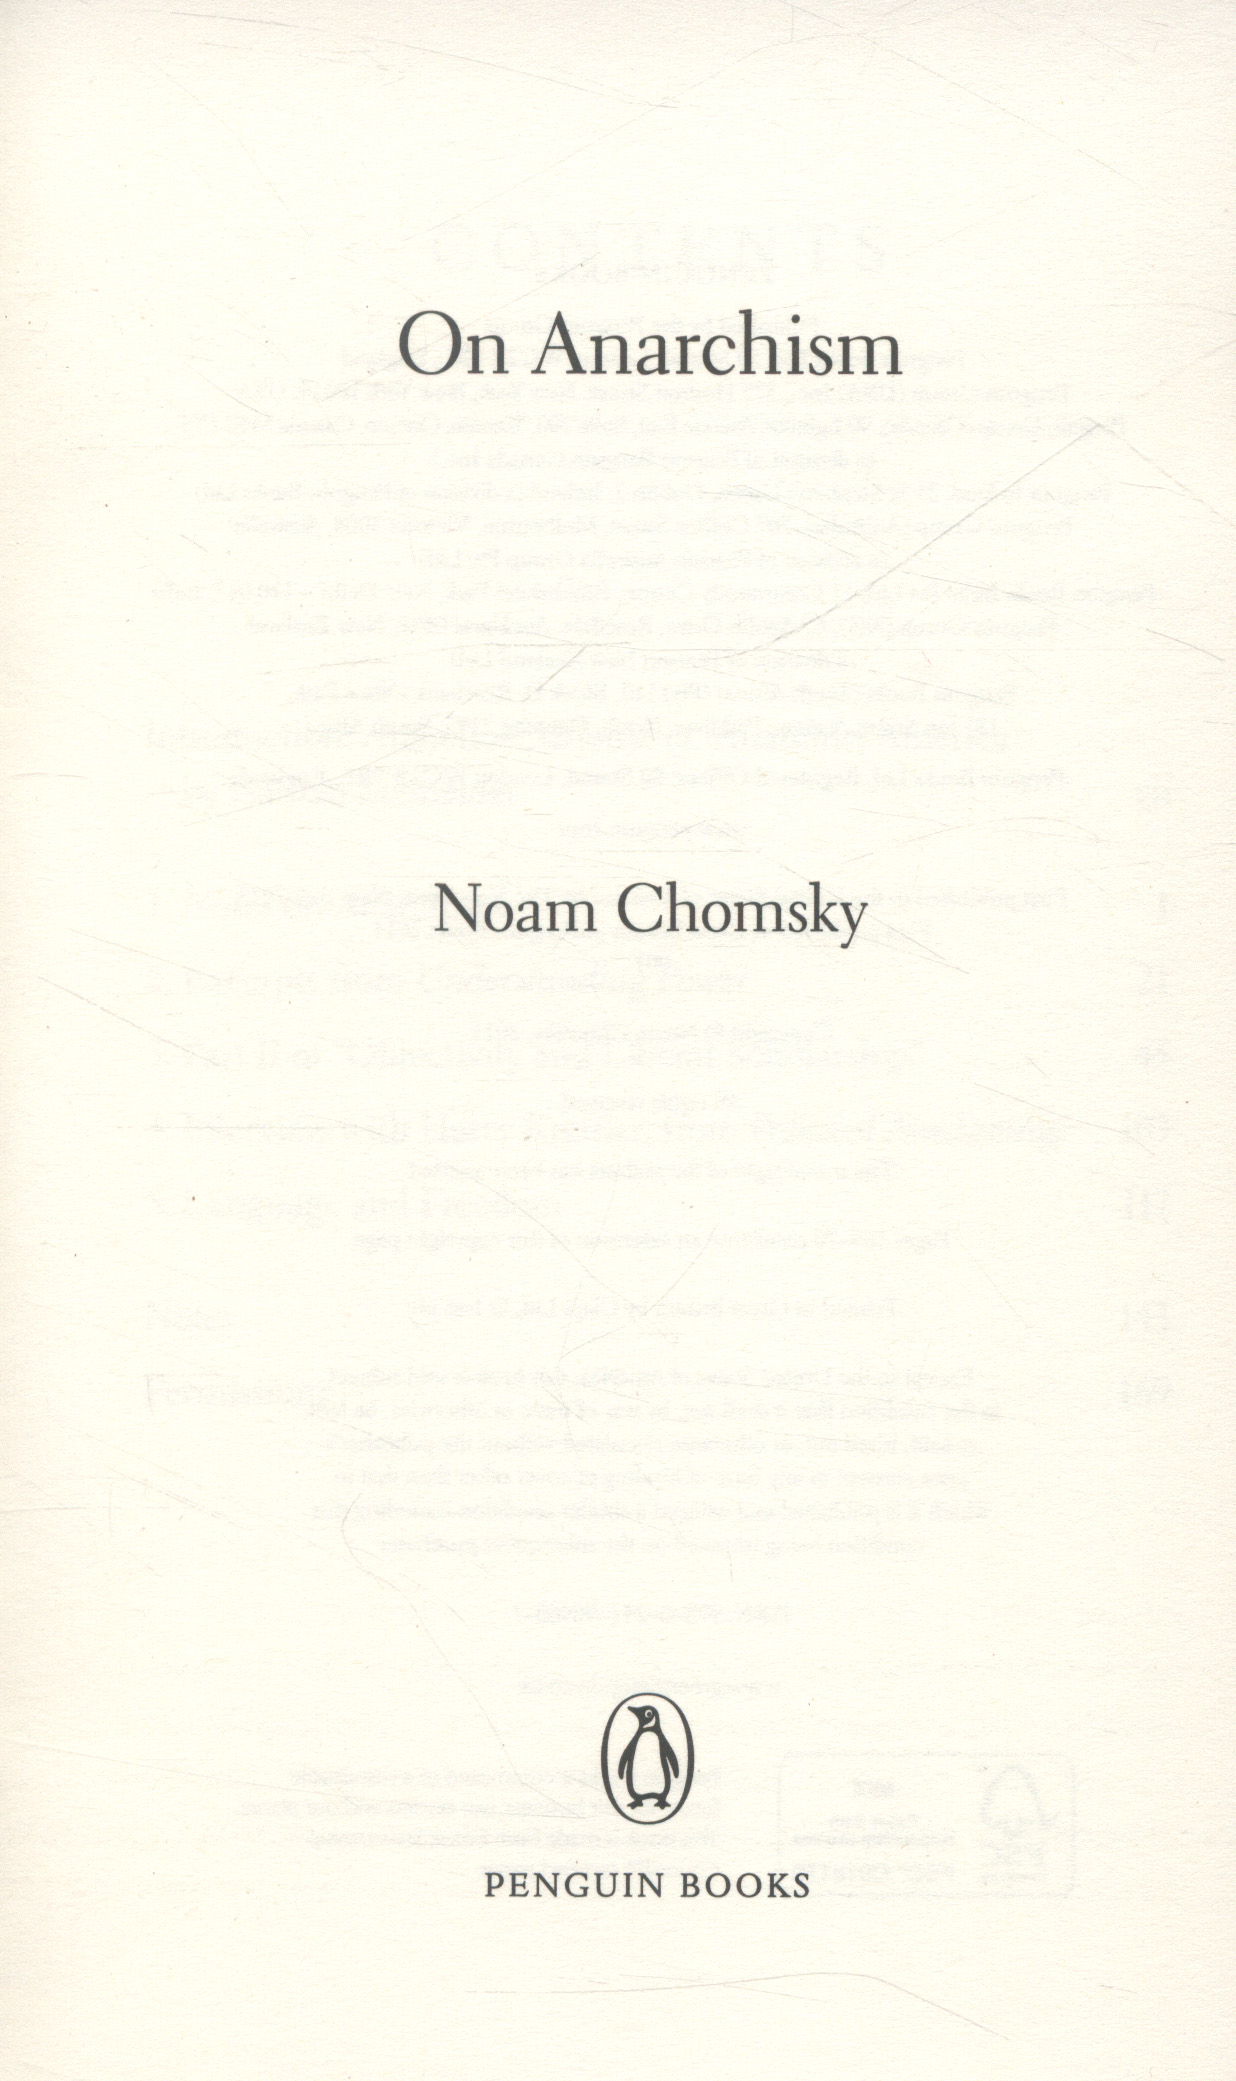 On Anarchism by Noam Chomsky